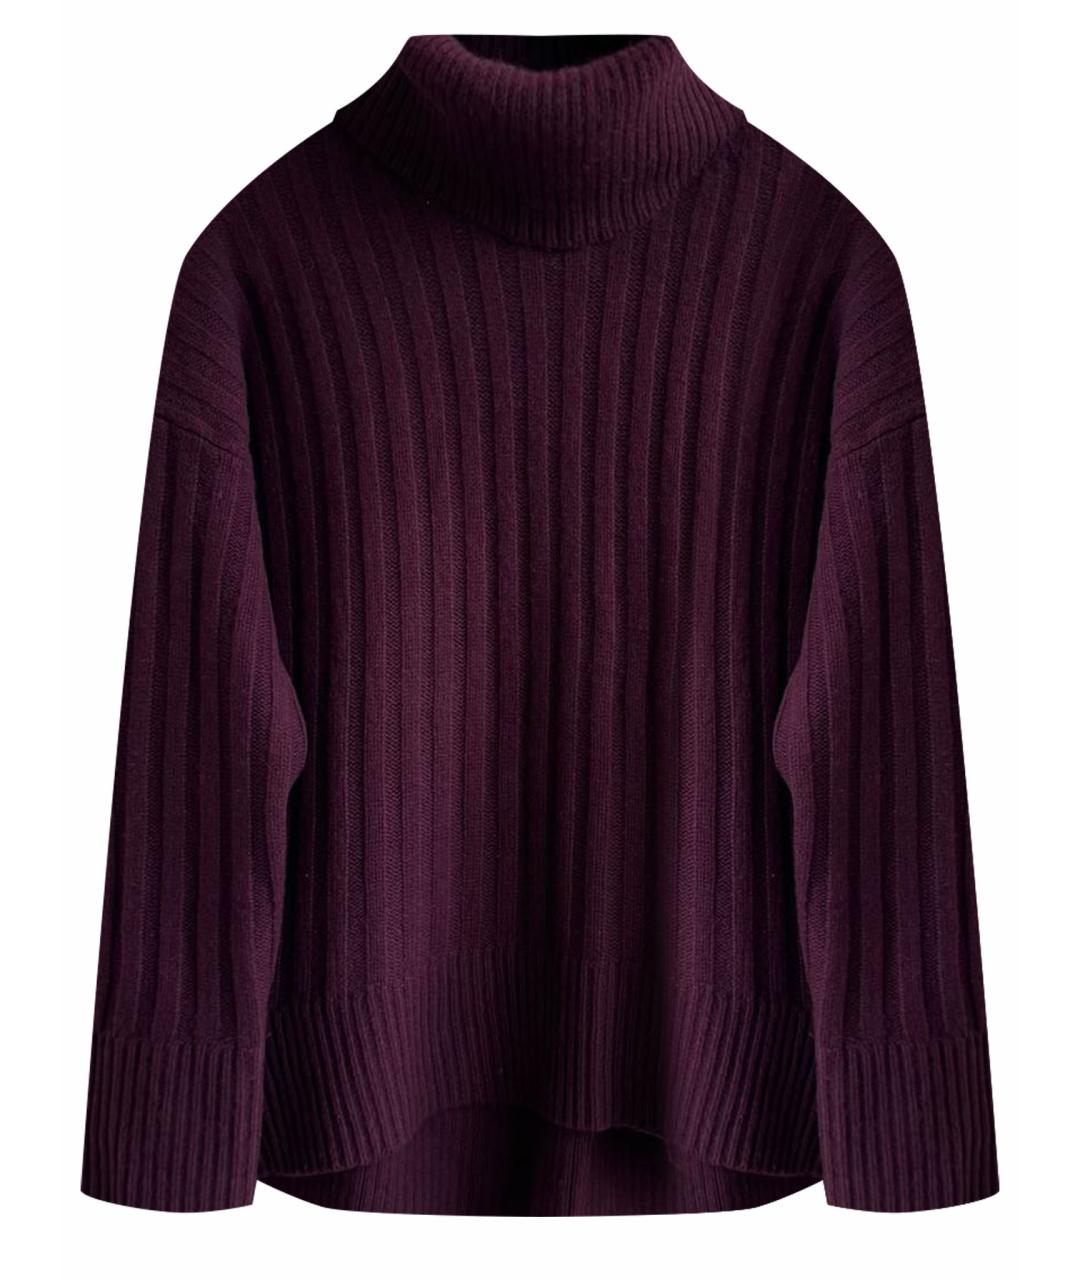 POLO RALPH LAUREN Бордовый шерстяной джемпер / свитер, фото 1